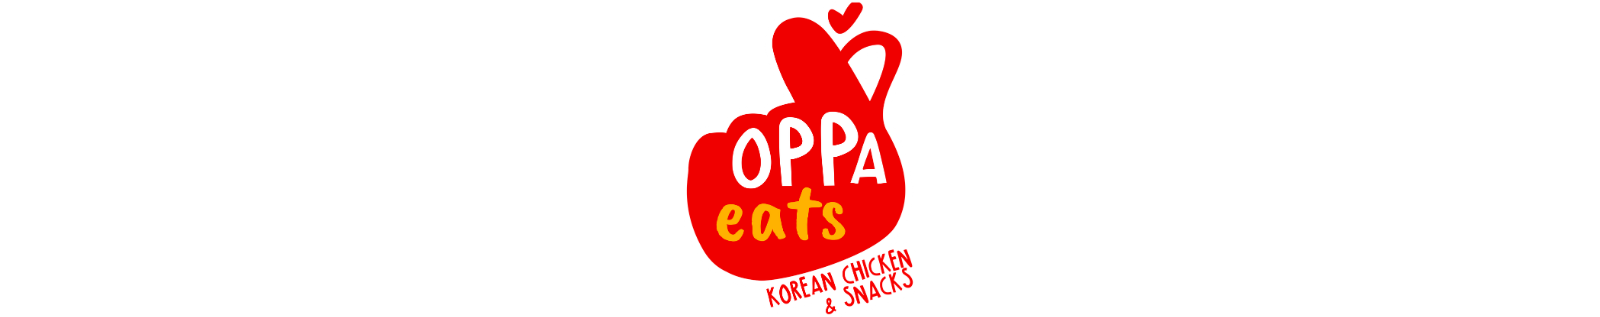 Oppa Eats